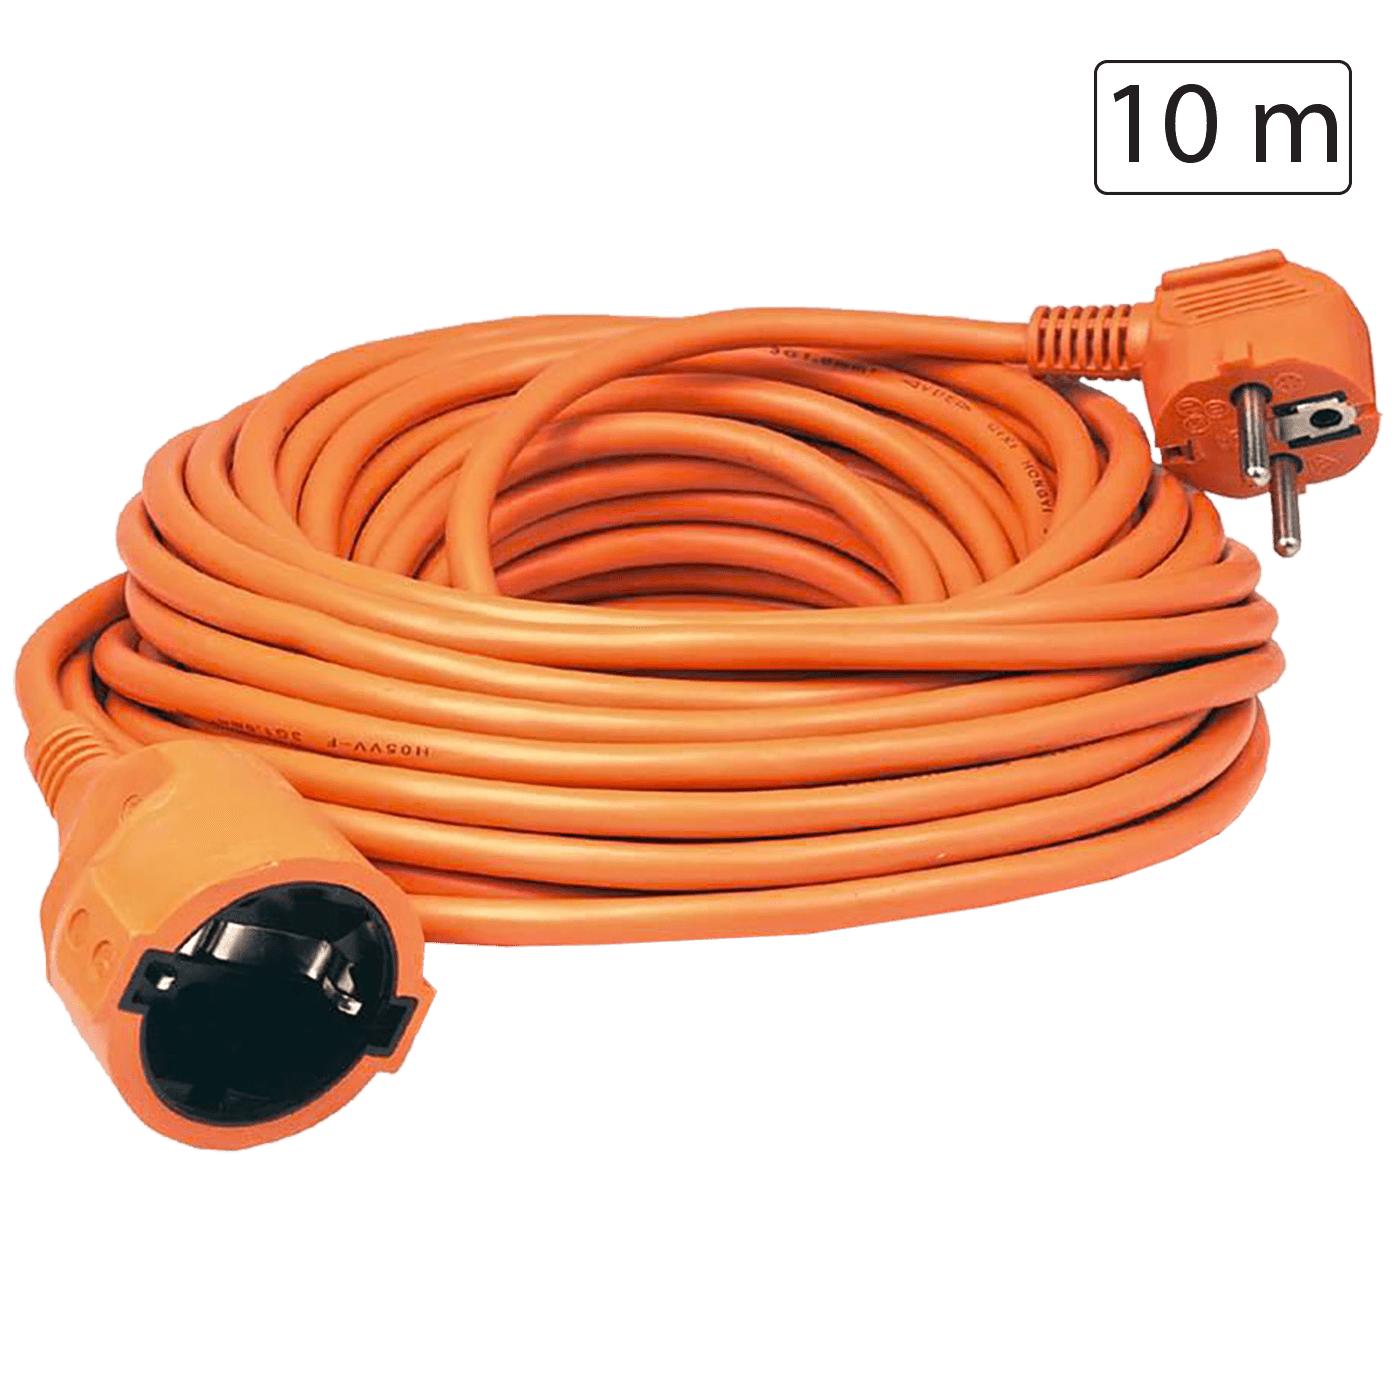 Produžni strujni kabl 1 utičnica, 10m, H05VV-F 3G, orange